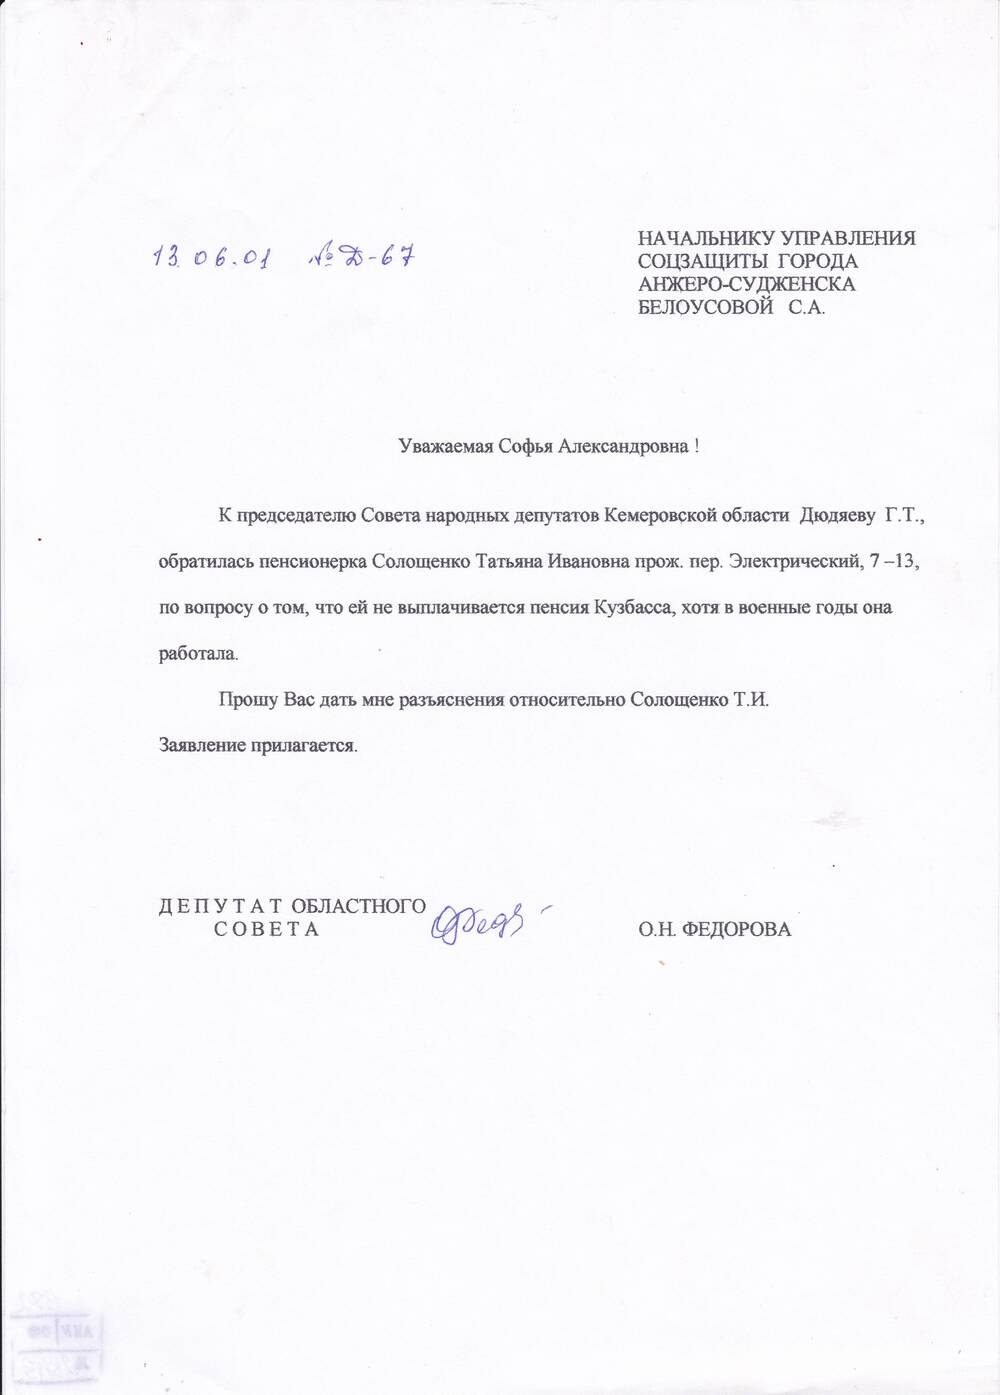 Запрос депутата облсовета Федоровой О.Н. от 13.06.2001 г.